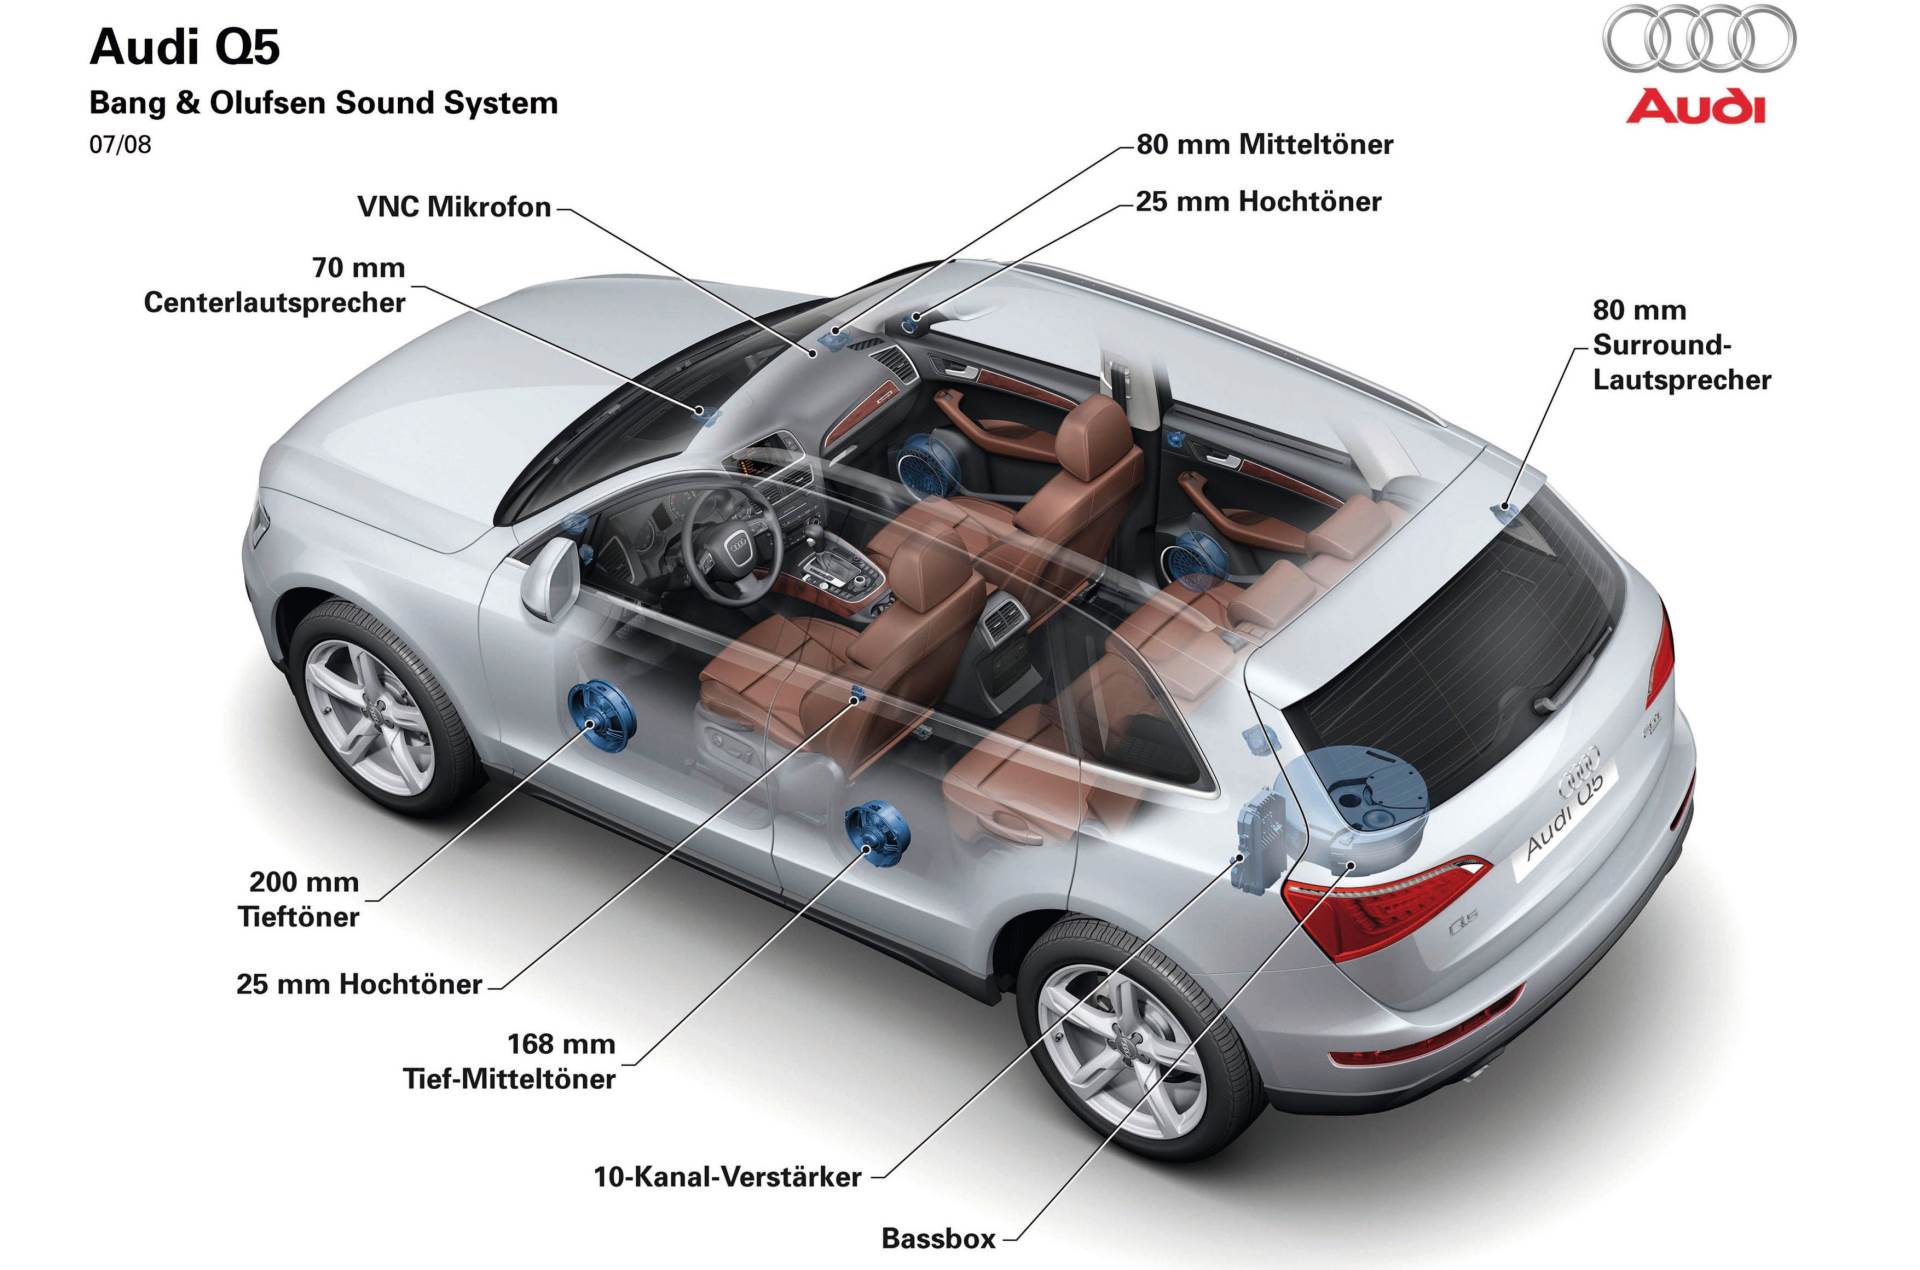  Bang & Olufsen zvučni sustav u Audiju Q5 